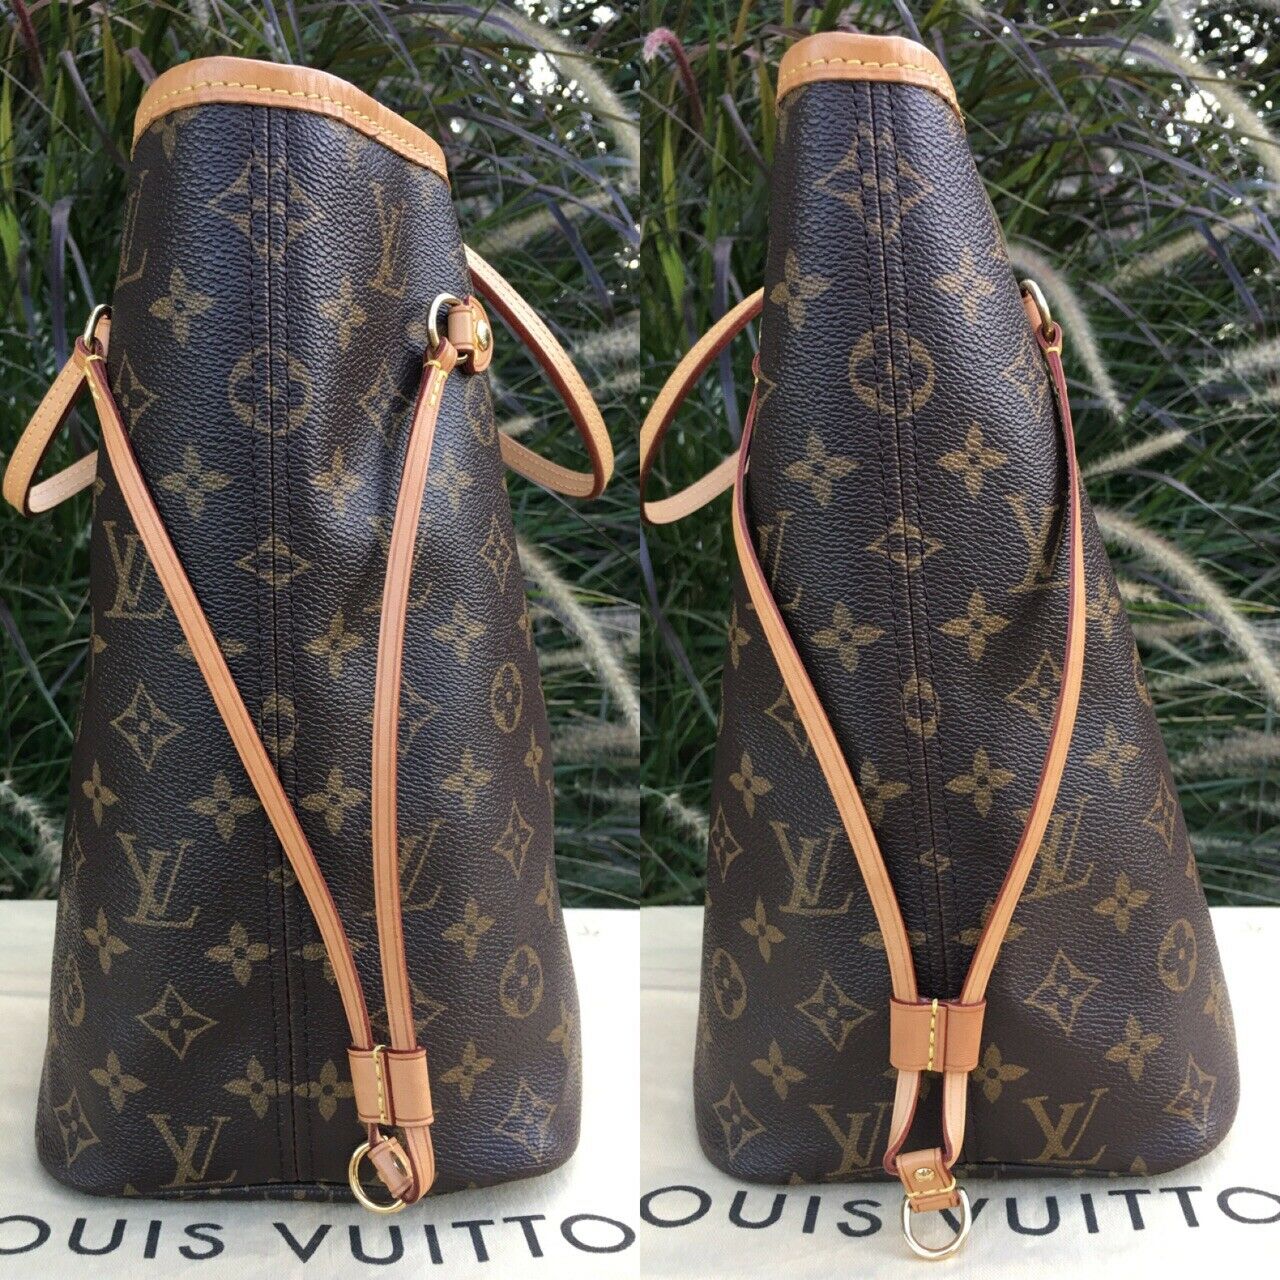 Louis Vuitton - Neverfull mm - Monogram - Cherry - Women - Handbag - Luxury